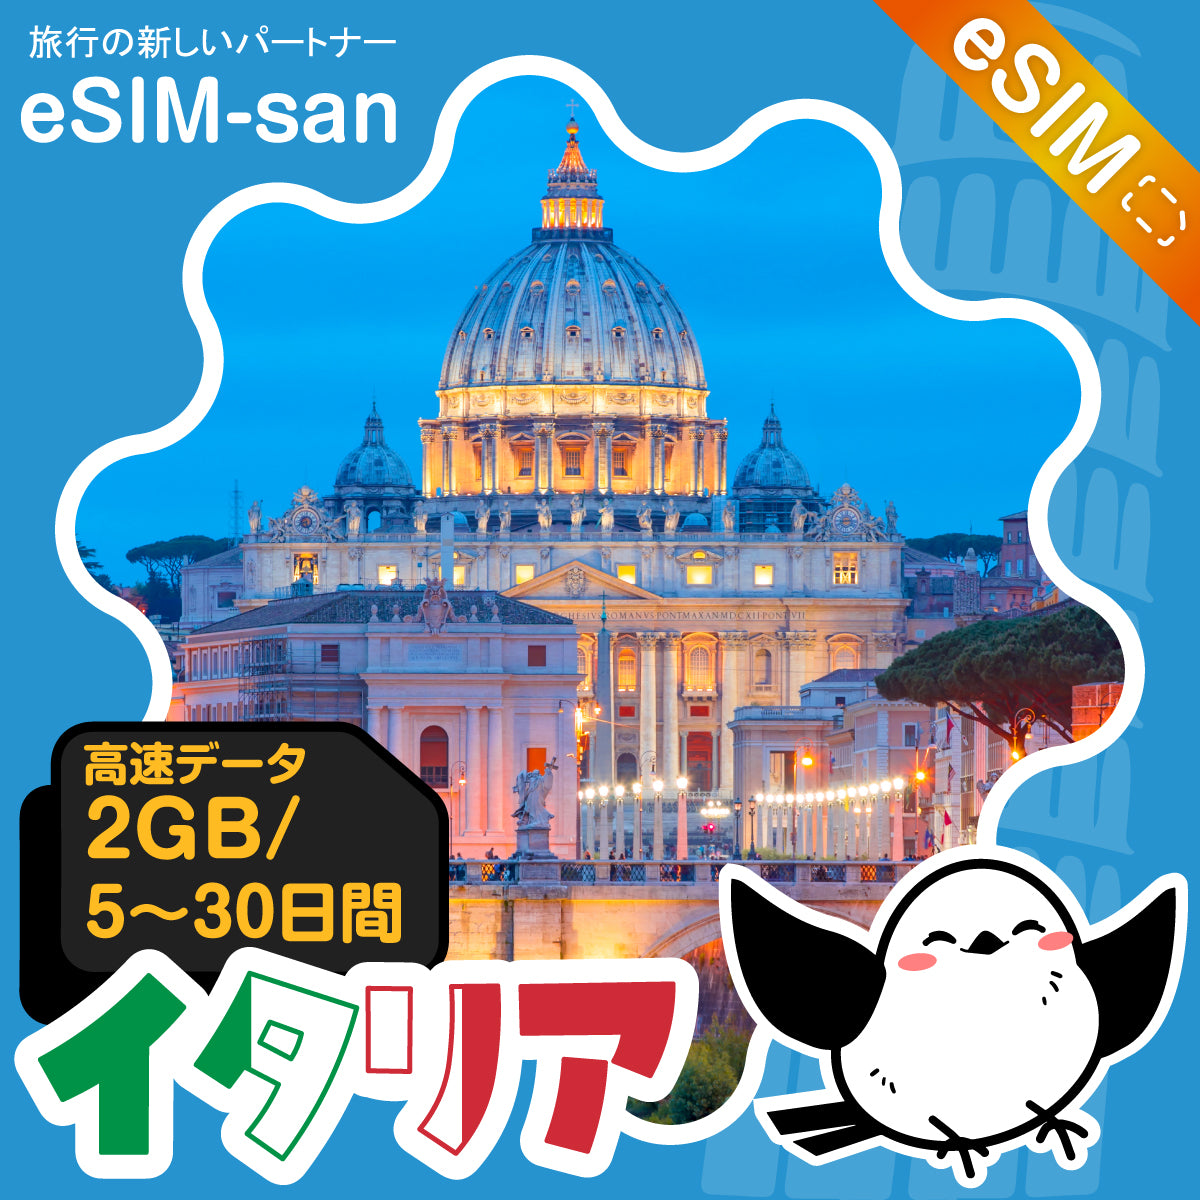 イタリアeSIMの2GB/dayプラン画像_eSIM-san